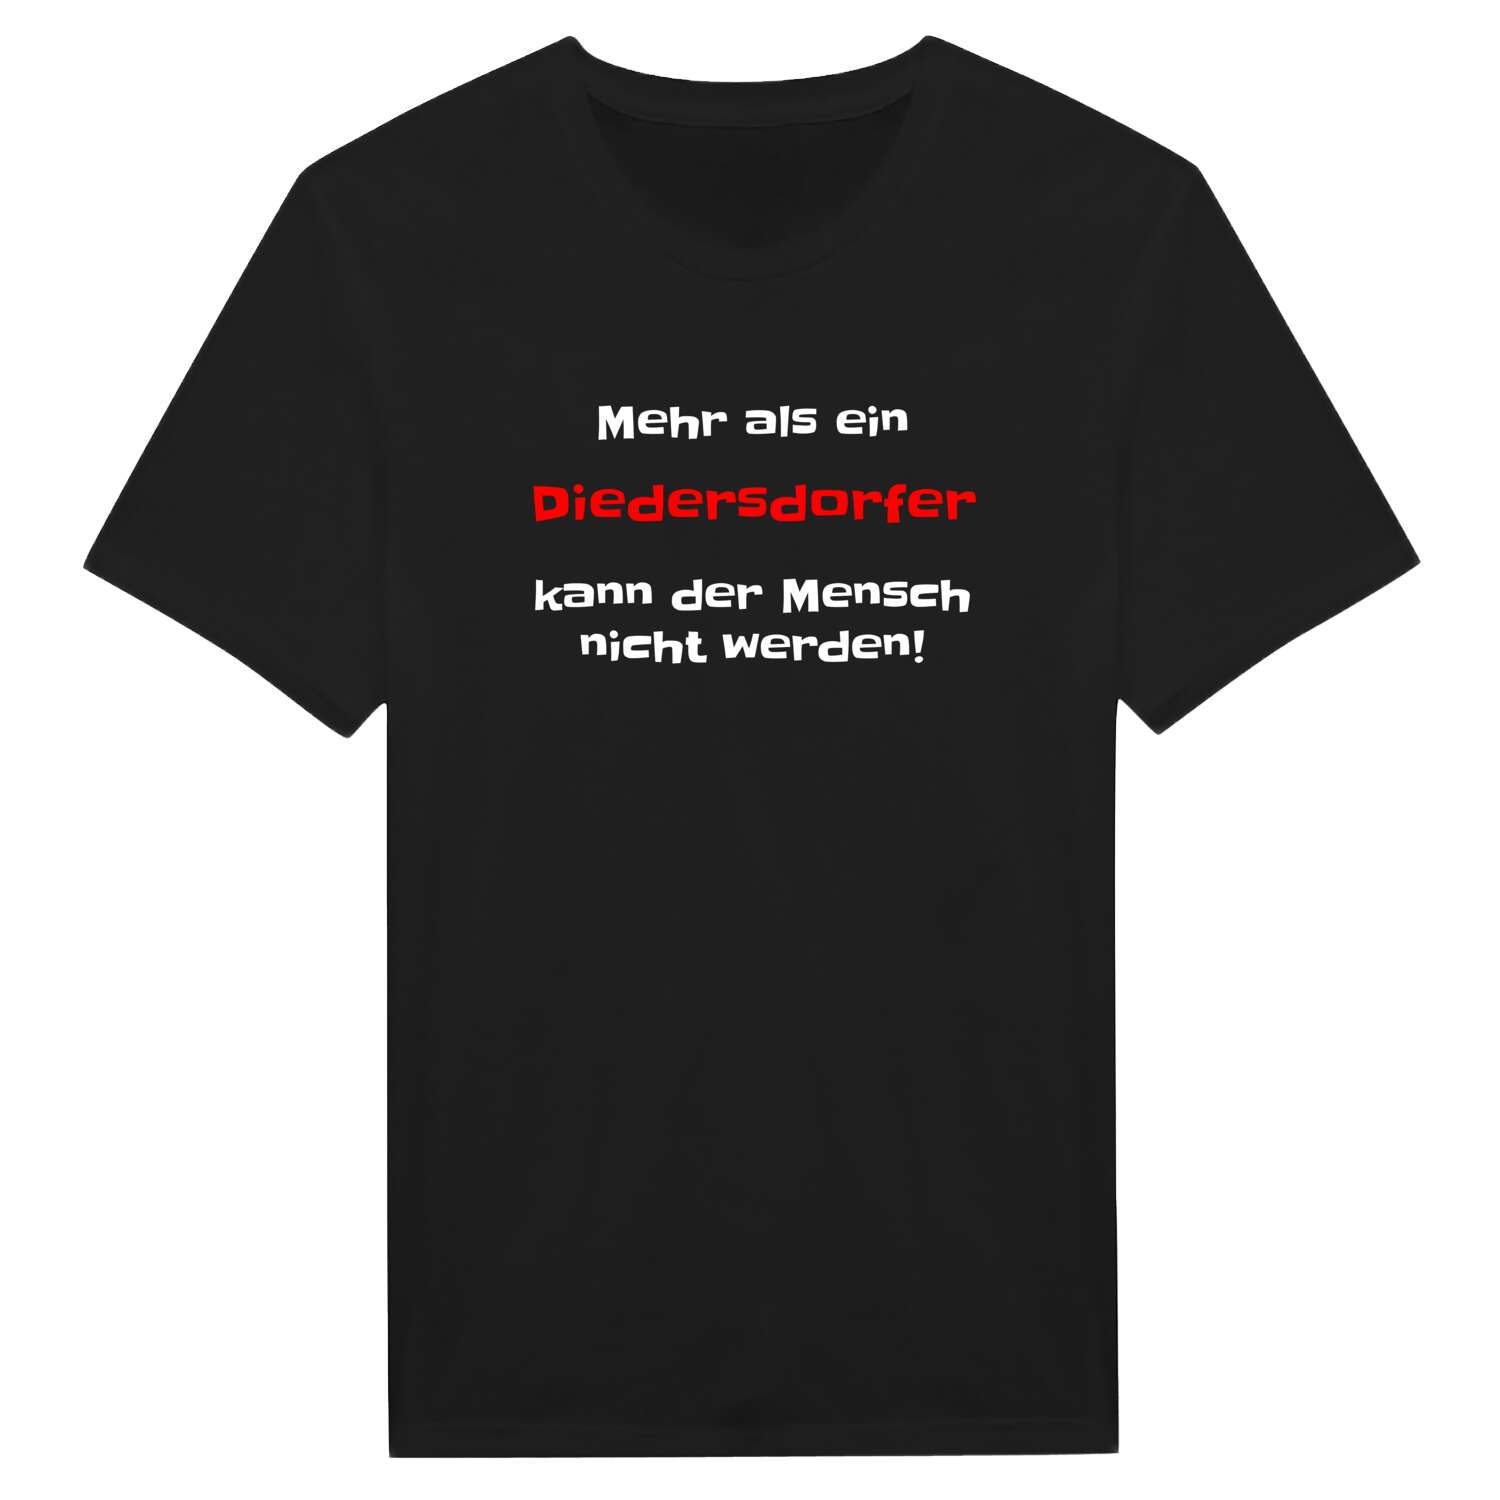 Diedersdorf T-Shirt »Mehr als ein«